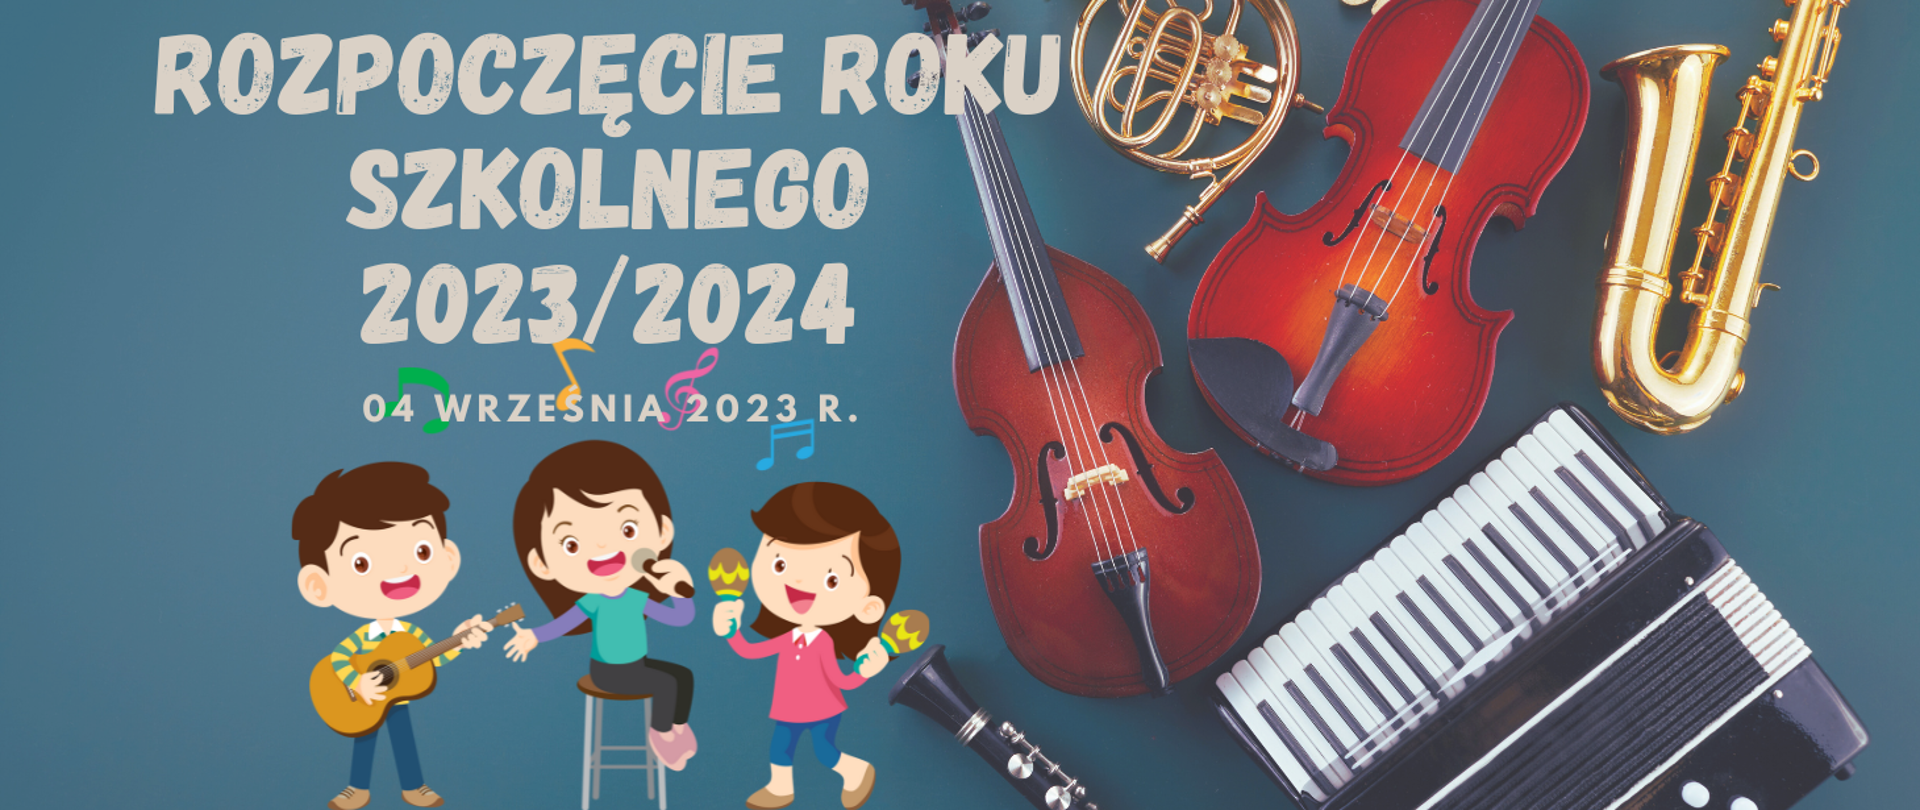 Zdjęcie przestawia napis Rozpoczęcie roku szkolnego 2023/2024 i sylwetki dzieci grających na instrumentach oraz zdjęcia instrumentów muzycznych